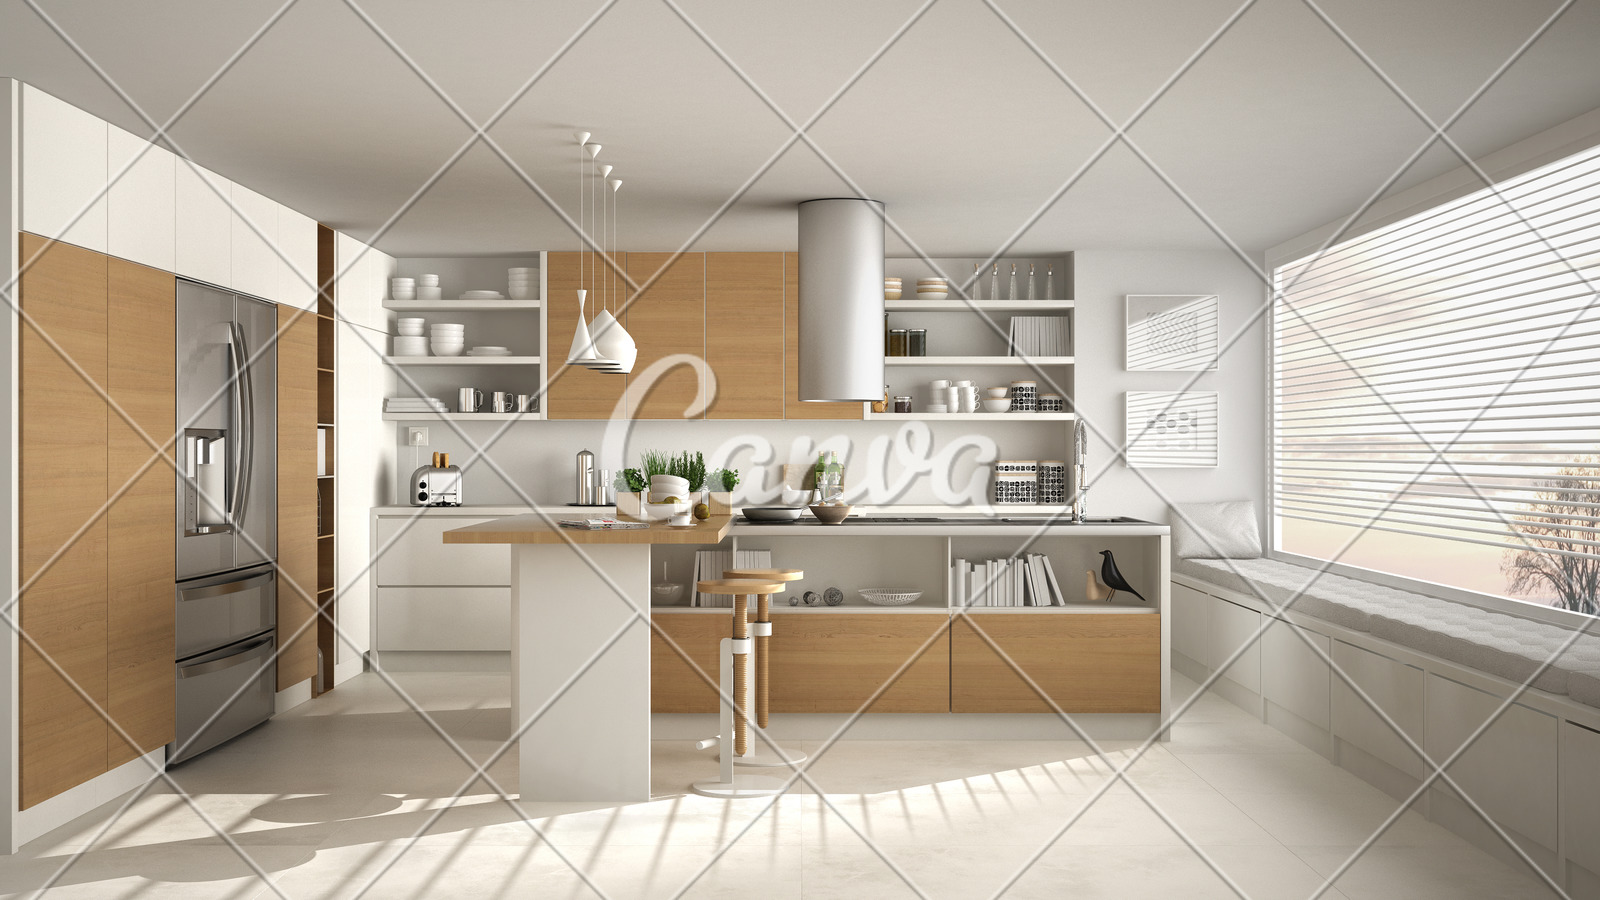 Blur Background Interior Design Modern Wooden Kitchen With